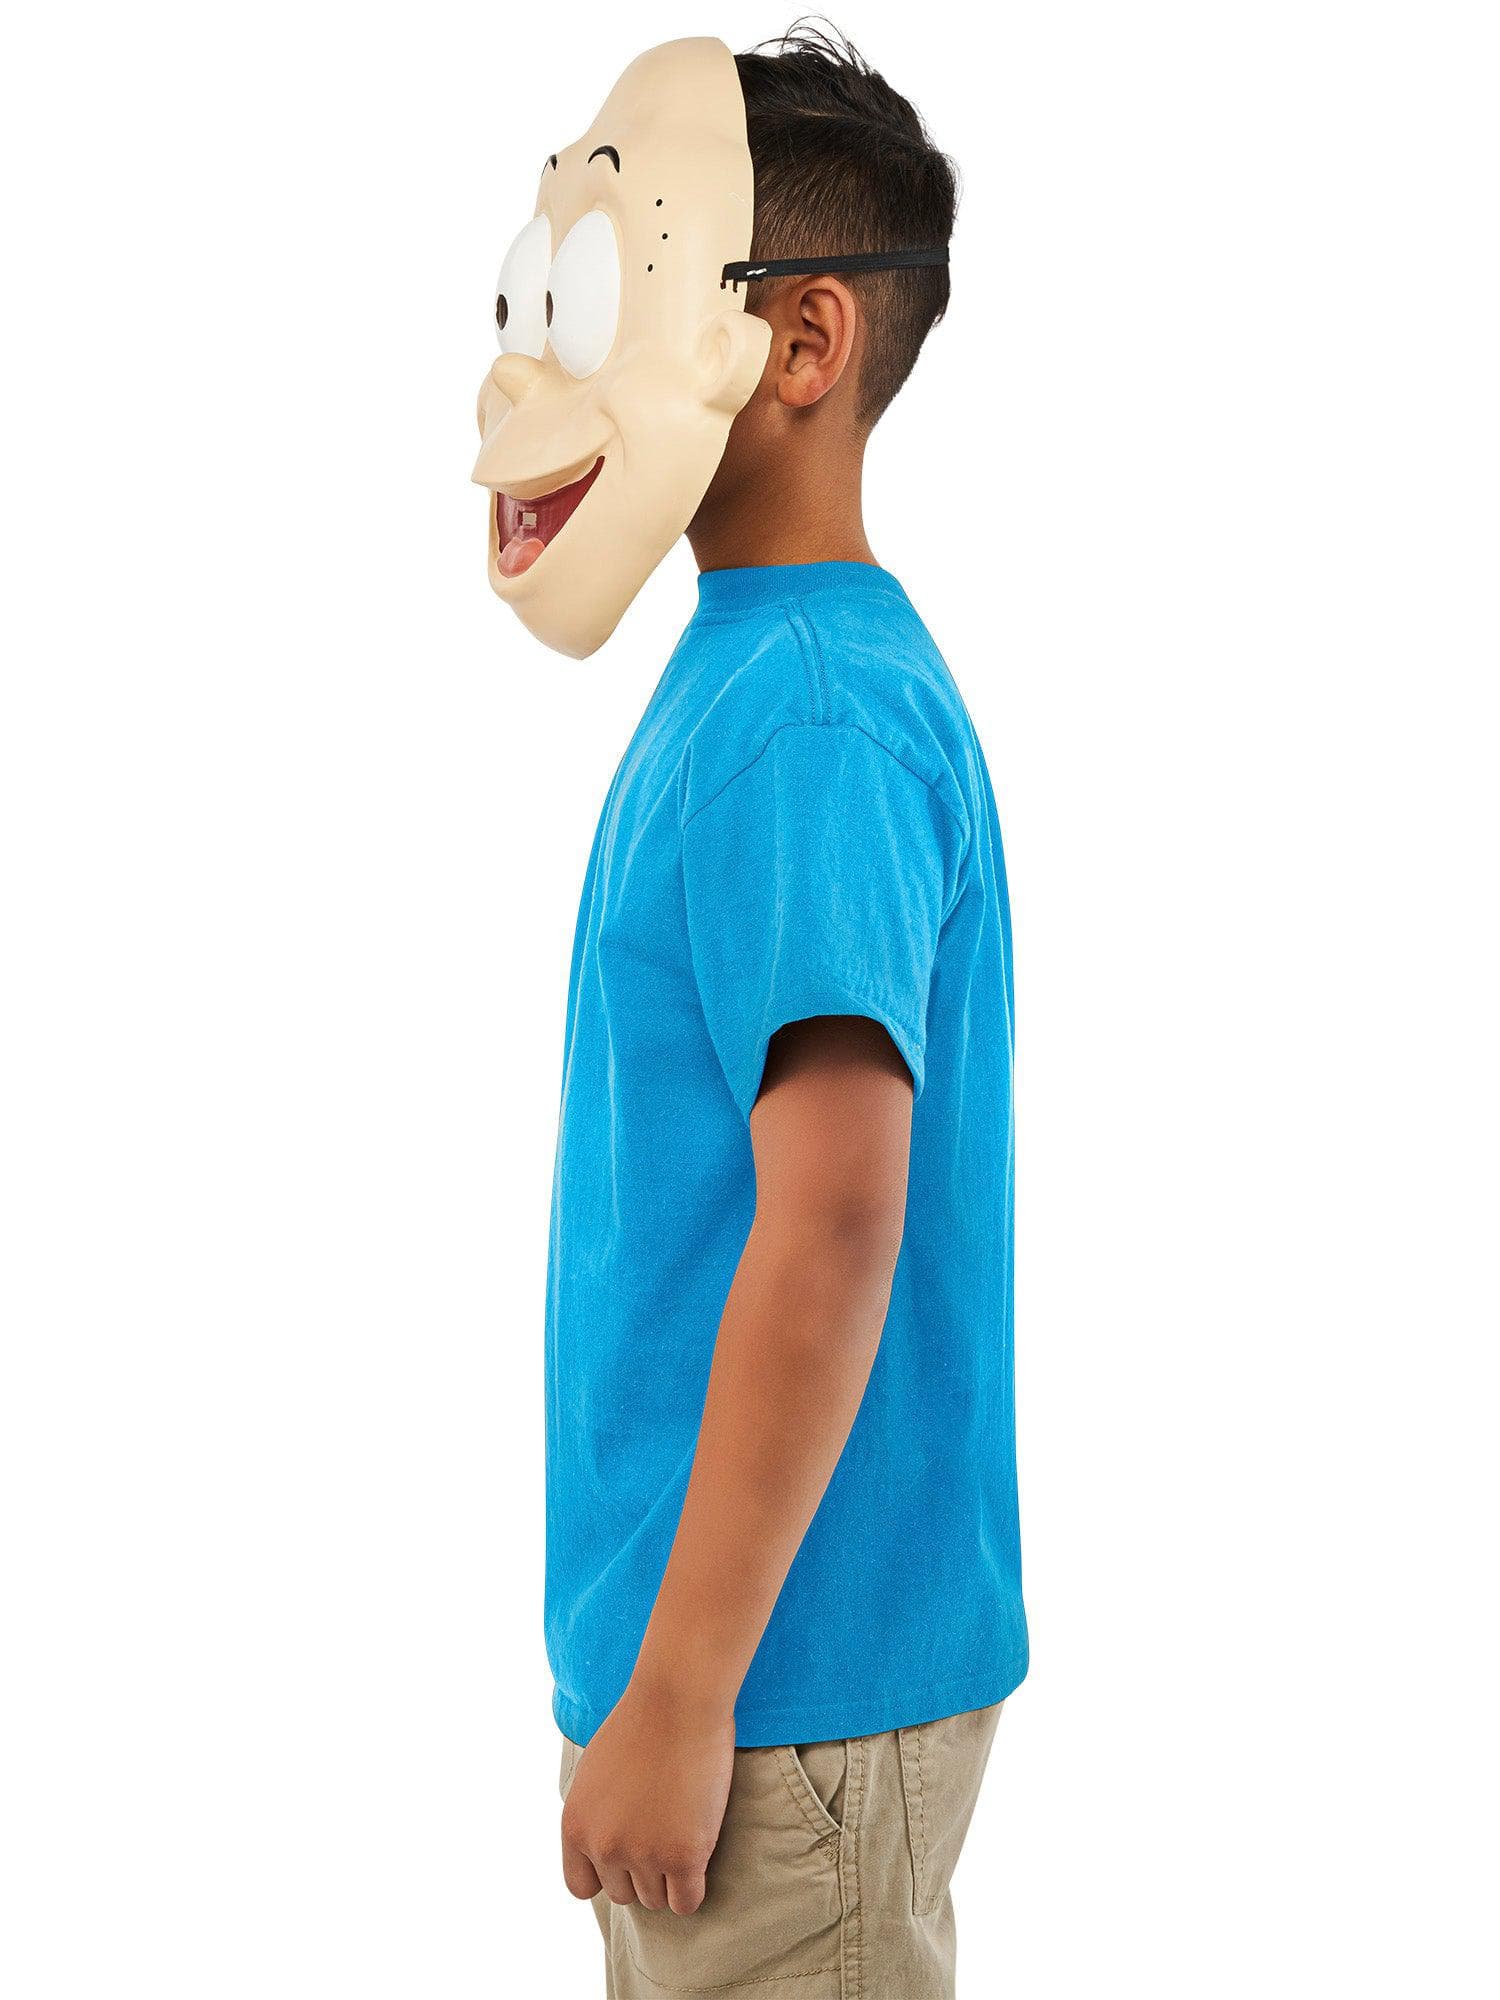 Kids' Rugrats Tommy Pickles Half Mask - costumes.com